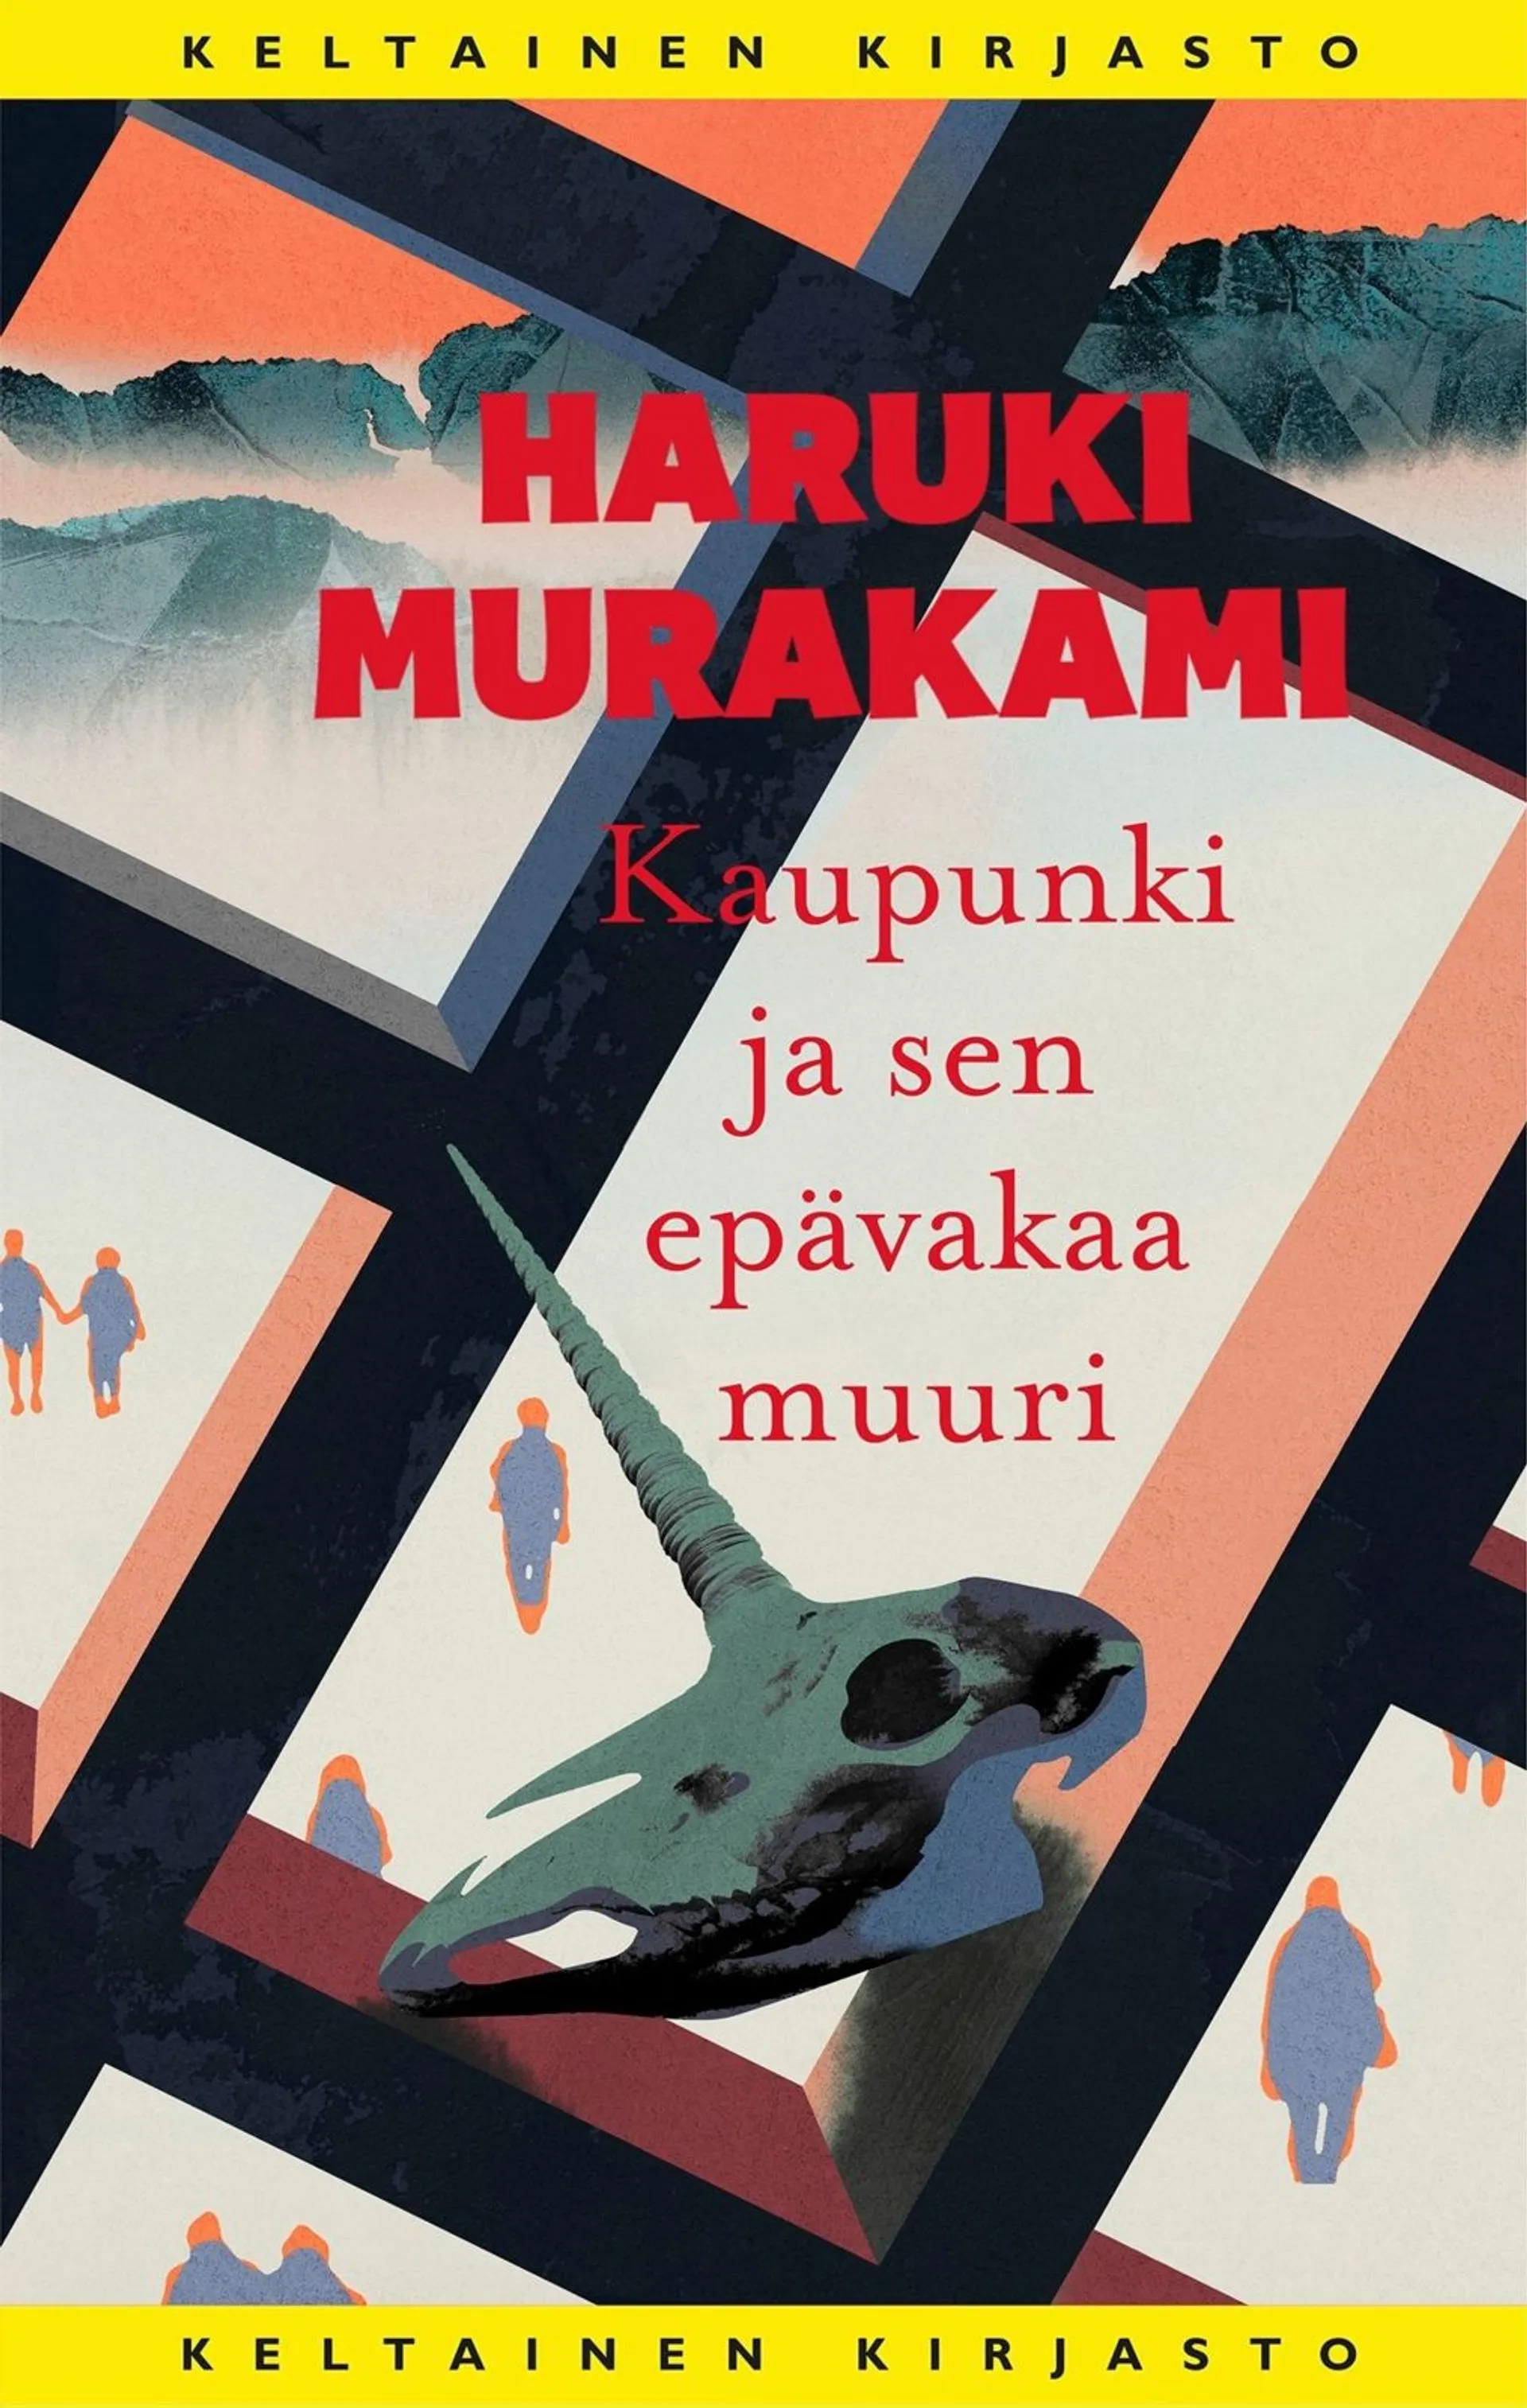 Murakami, Kaupunki ja sen epävakaa muuri